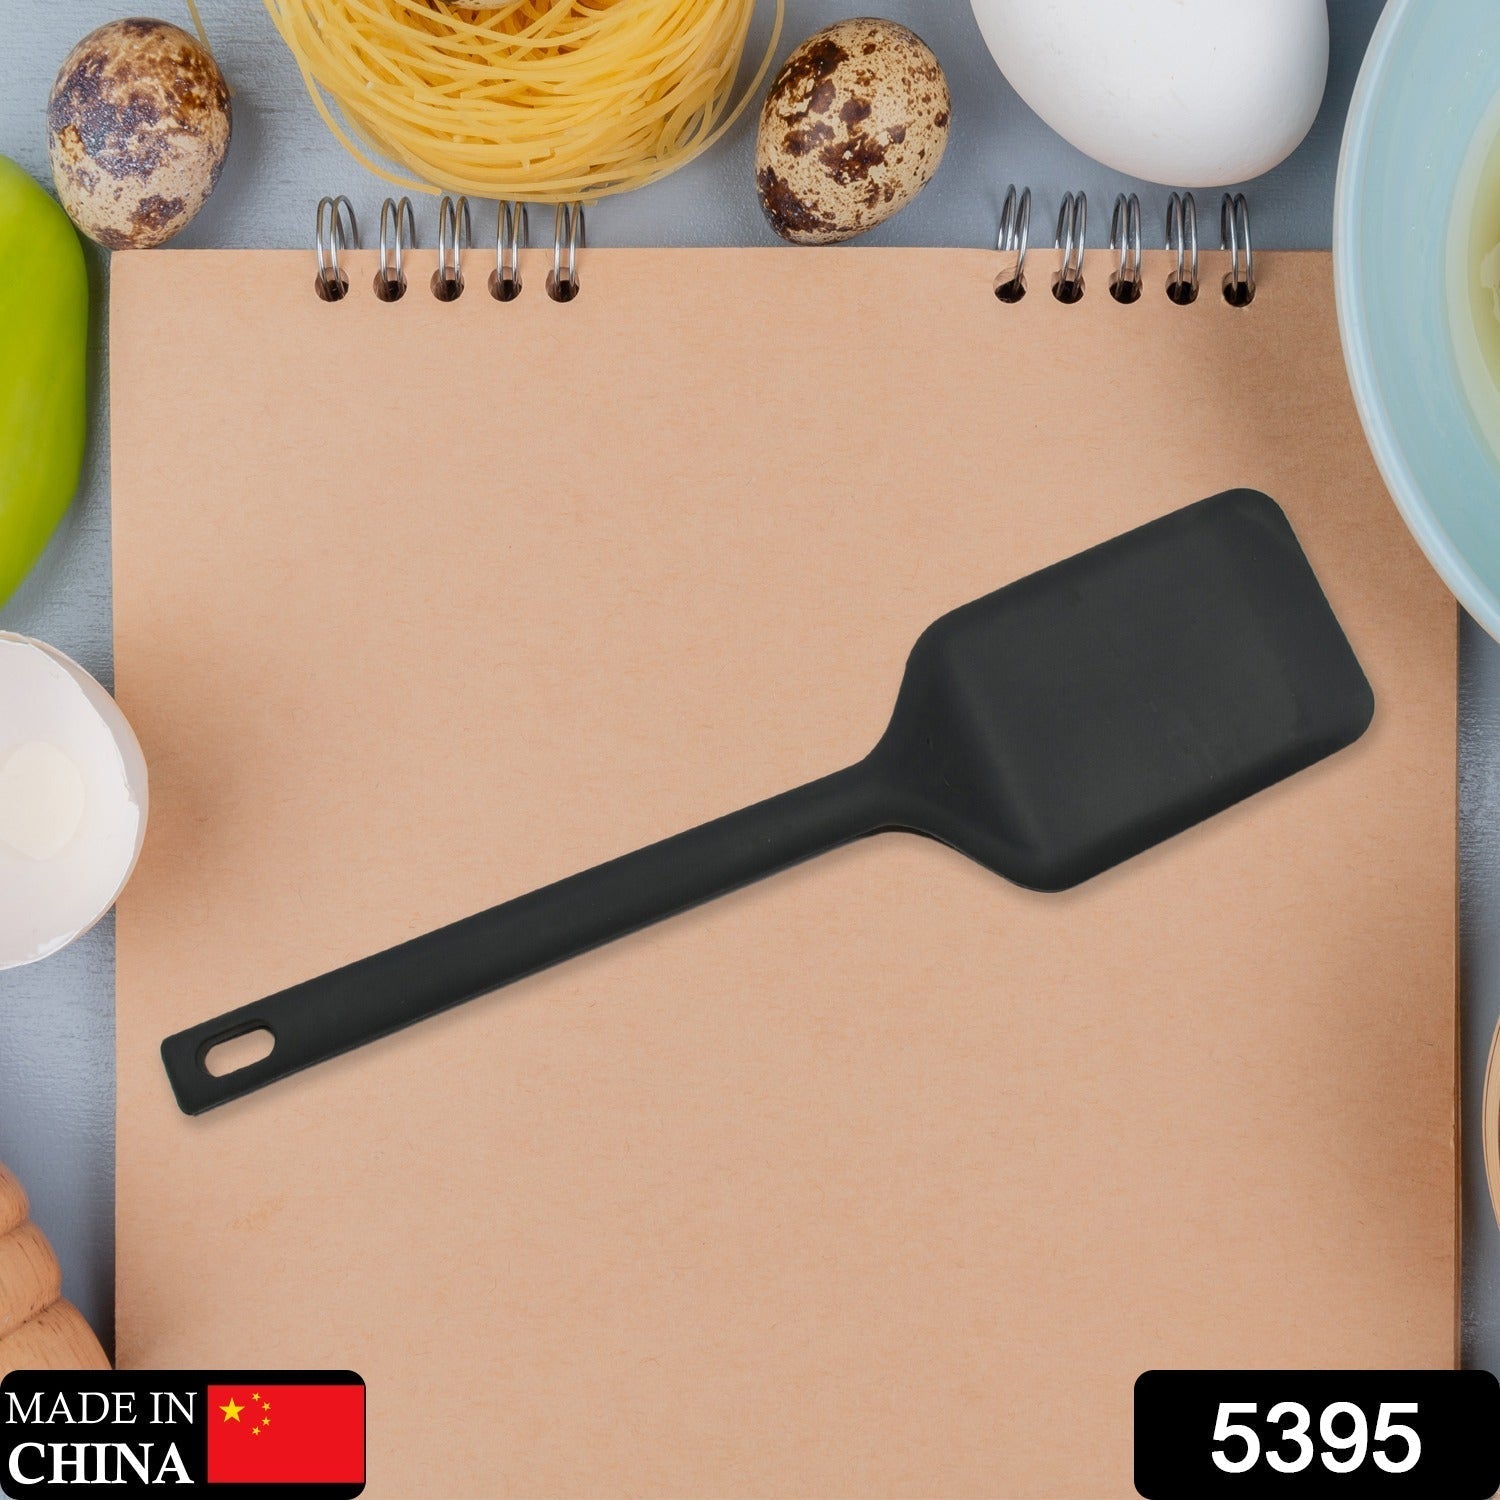 5395 Cutlery Kitchen Set Dessert Serving Spatulas-Premium Nylon Turner and Flipper. JK Trends